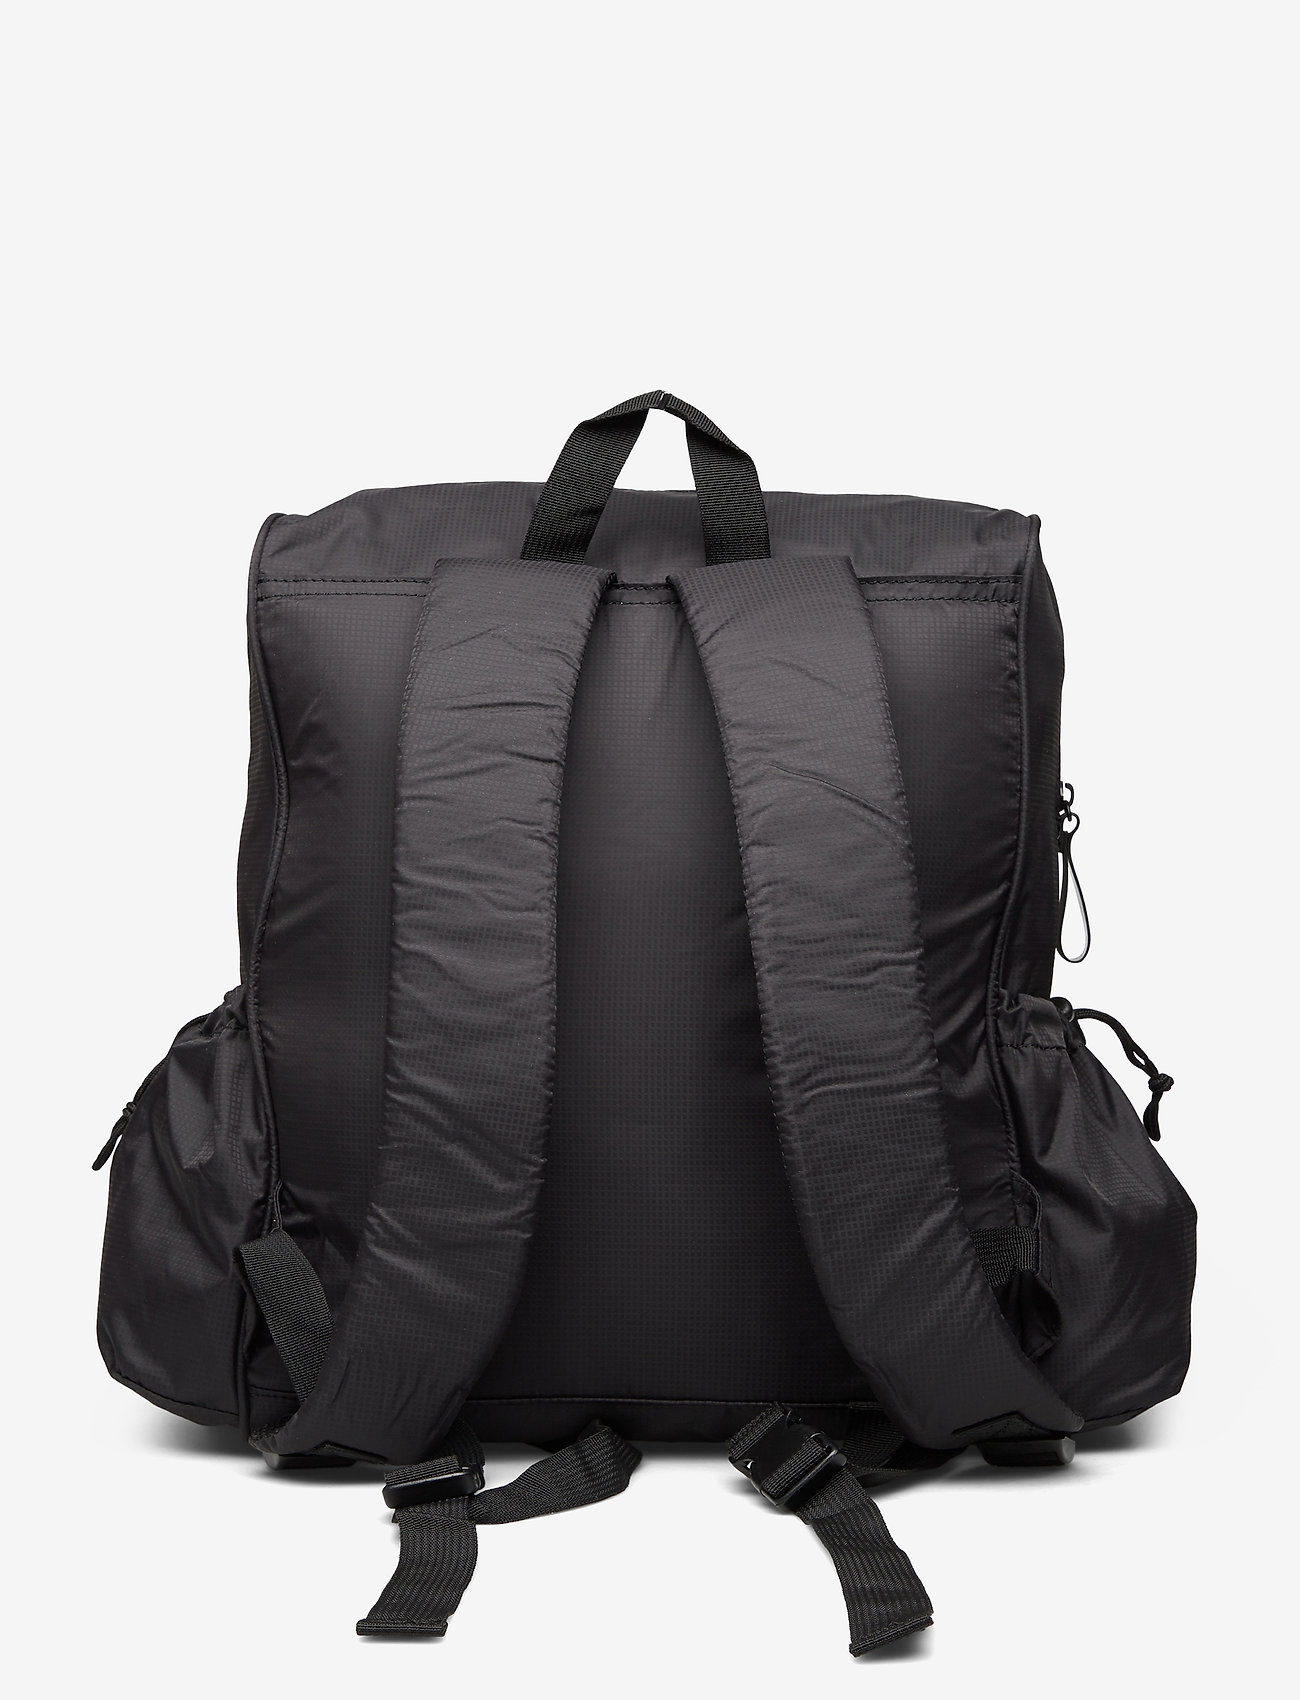 DAY et Day Et-sport Pack B - Backpacks | Boozt.com